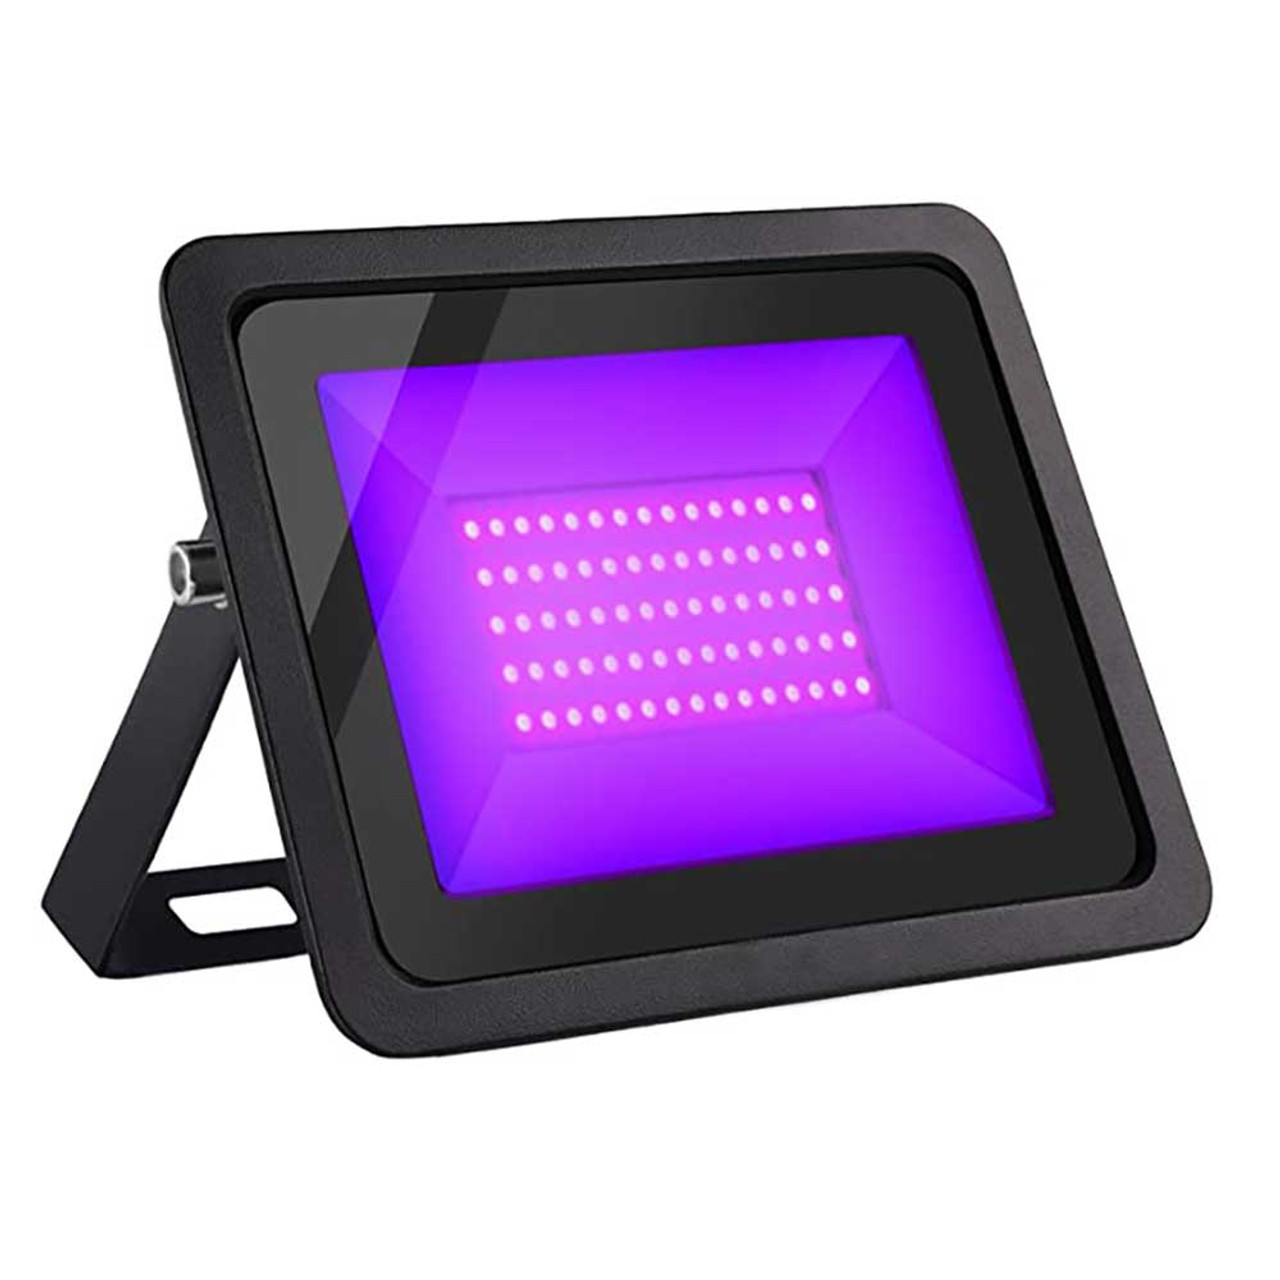 UV Black Light 365nm  LED Flood Lights IP66